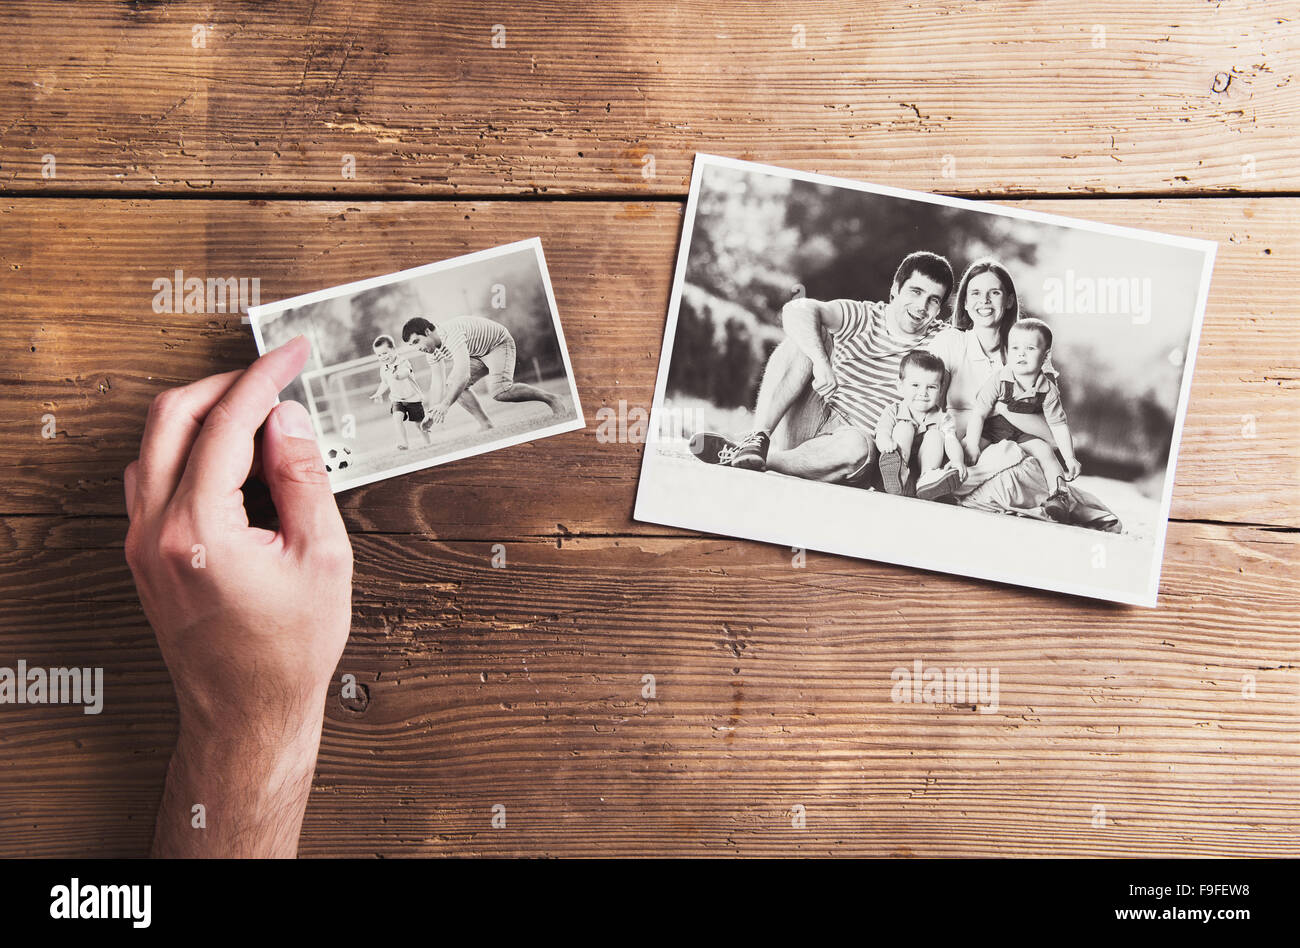 Schwarz / weiß Familienfotos auf einen Tisch gelegt. Studio auf hölzernen Hintergrund gedreht. Stockfoto